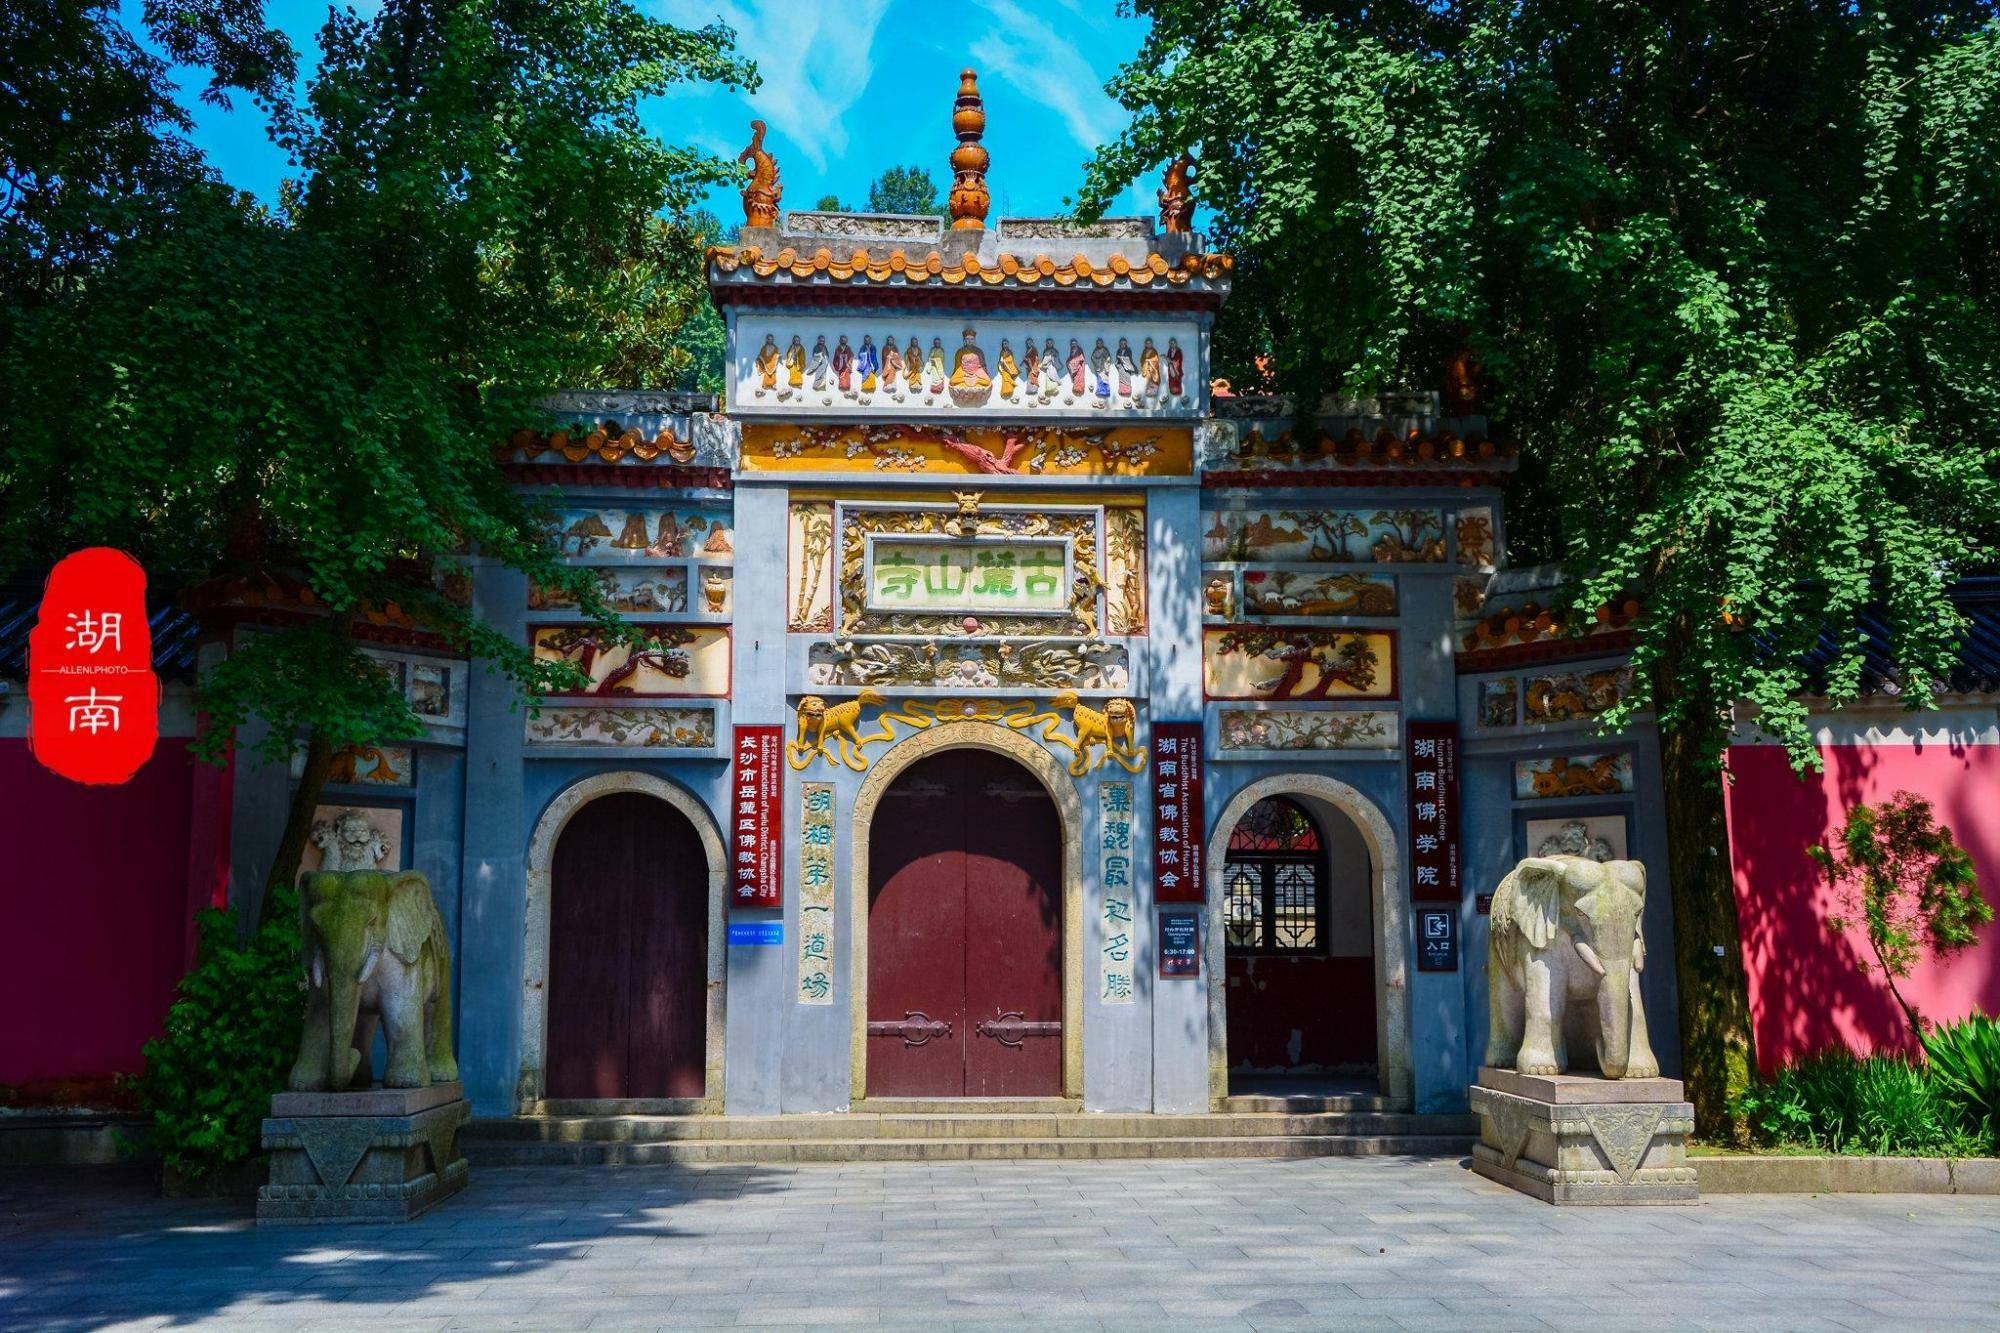 湖南的寺庙数量比较多,它位于湖南的长沙,具体在湘江西岸岳麓山山腰